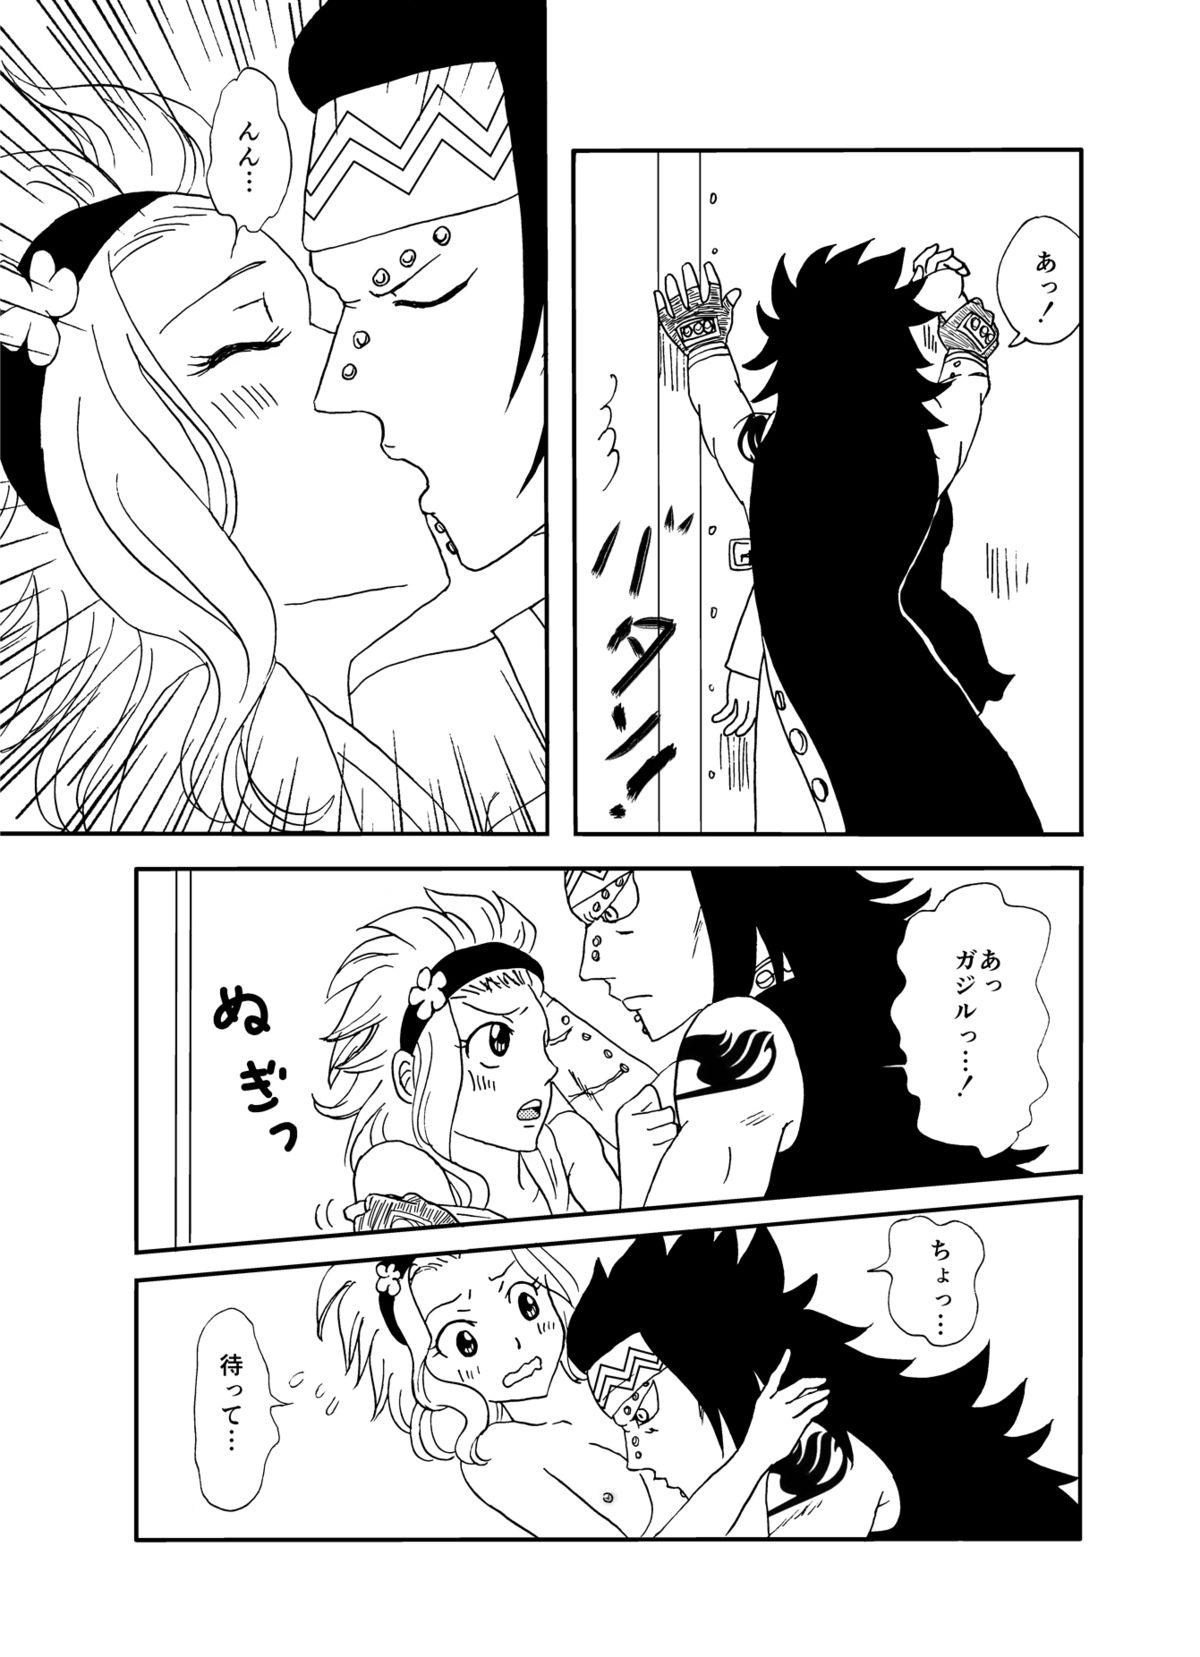 Tetas GajeeLevy Manga 2 - Fairy tail Private - Page 5